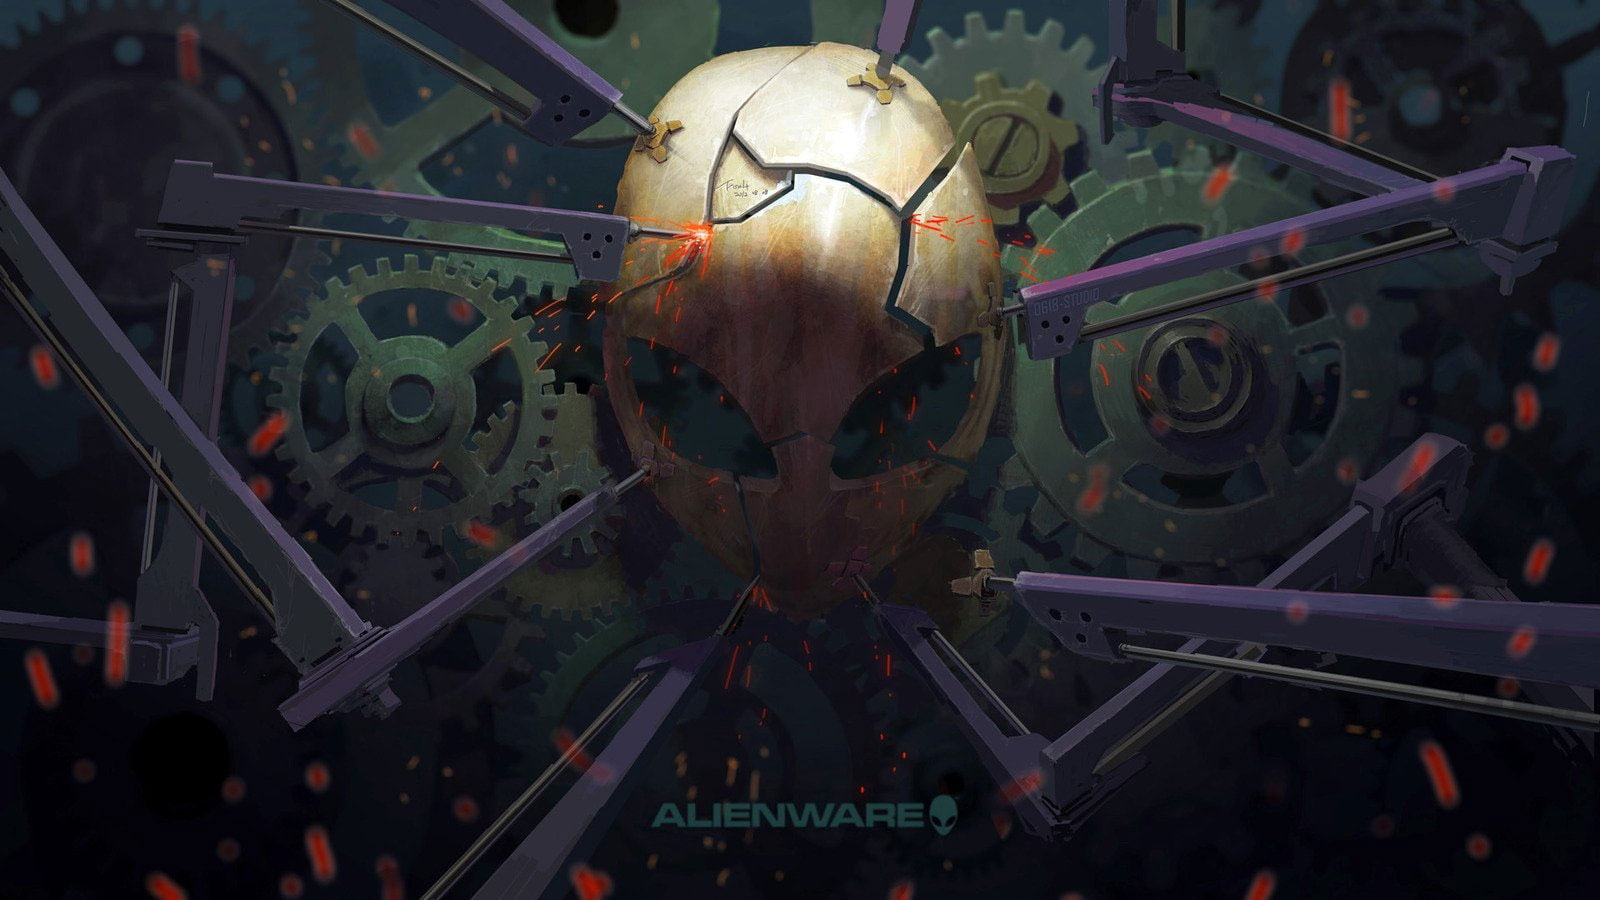 Brown Alien Digital Wallpaper, Alienware, Alien, Game